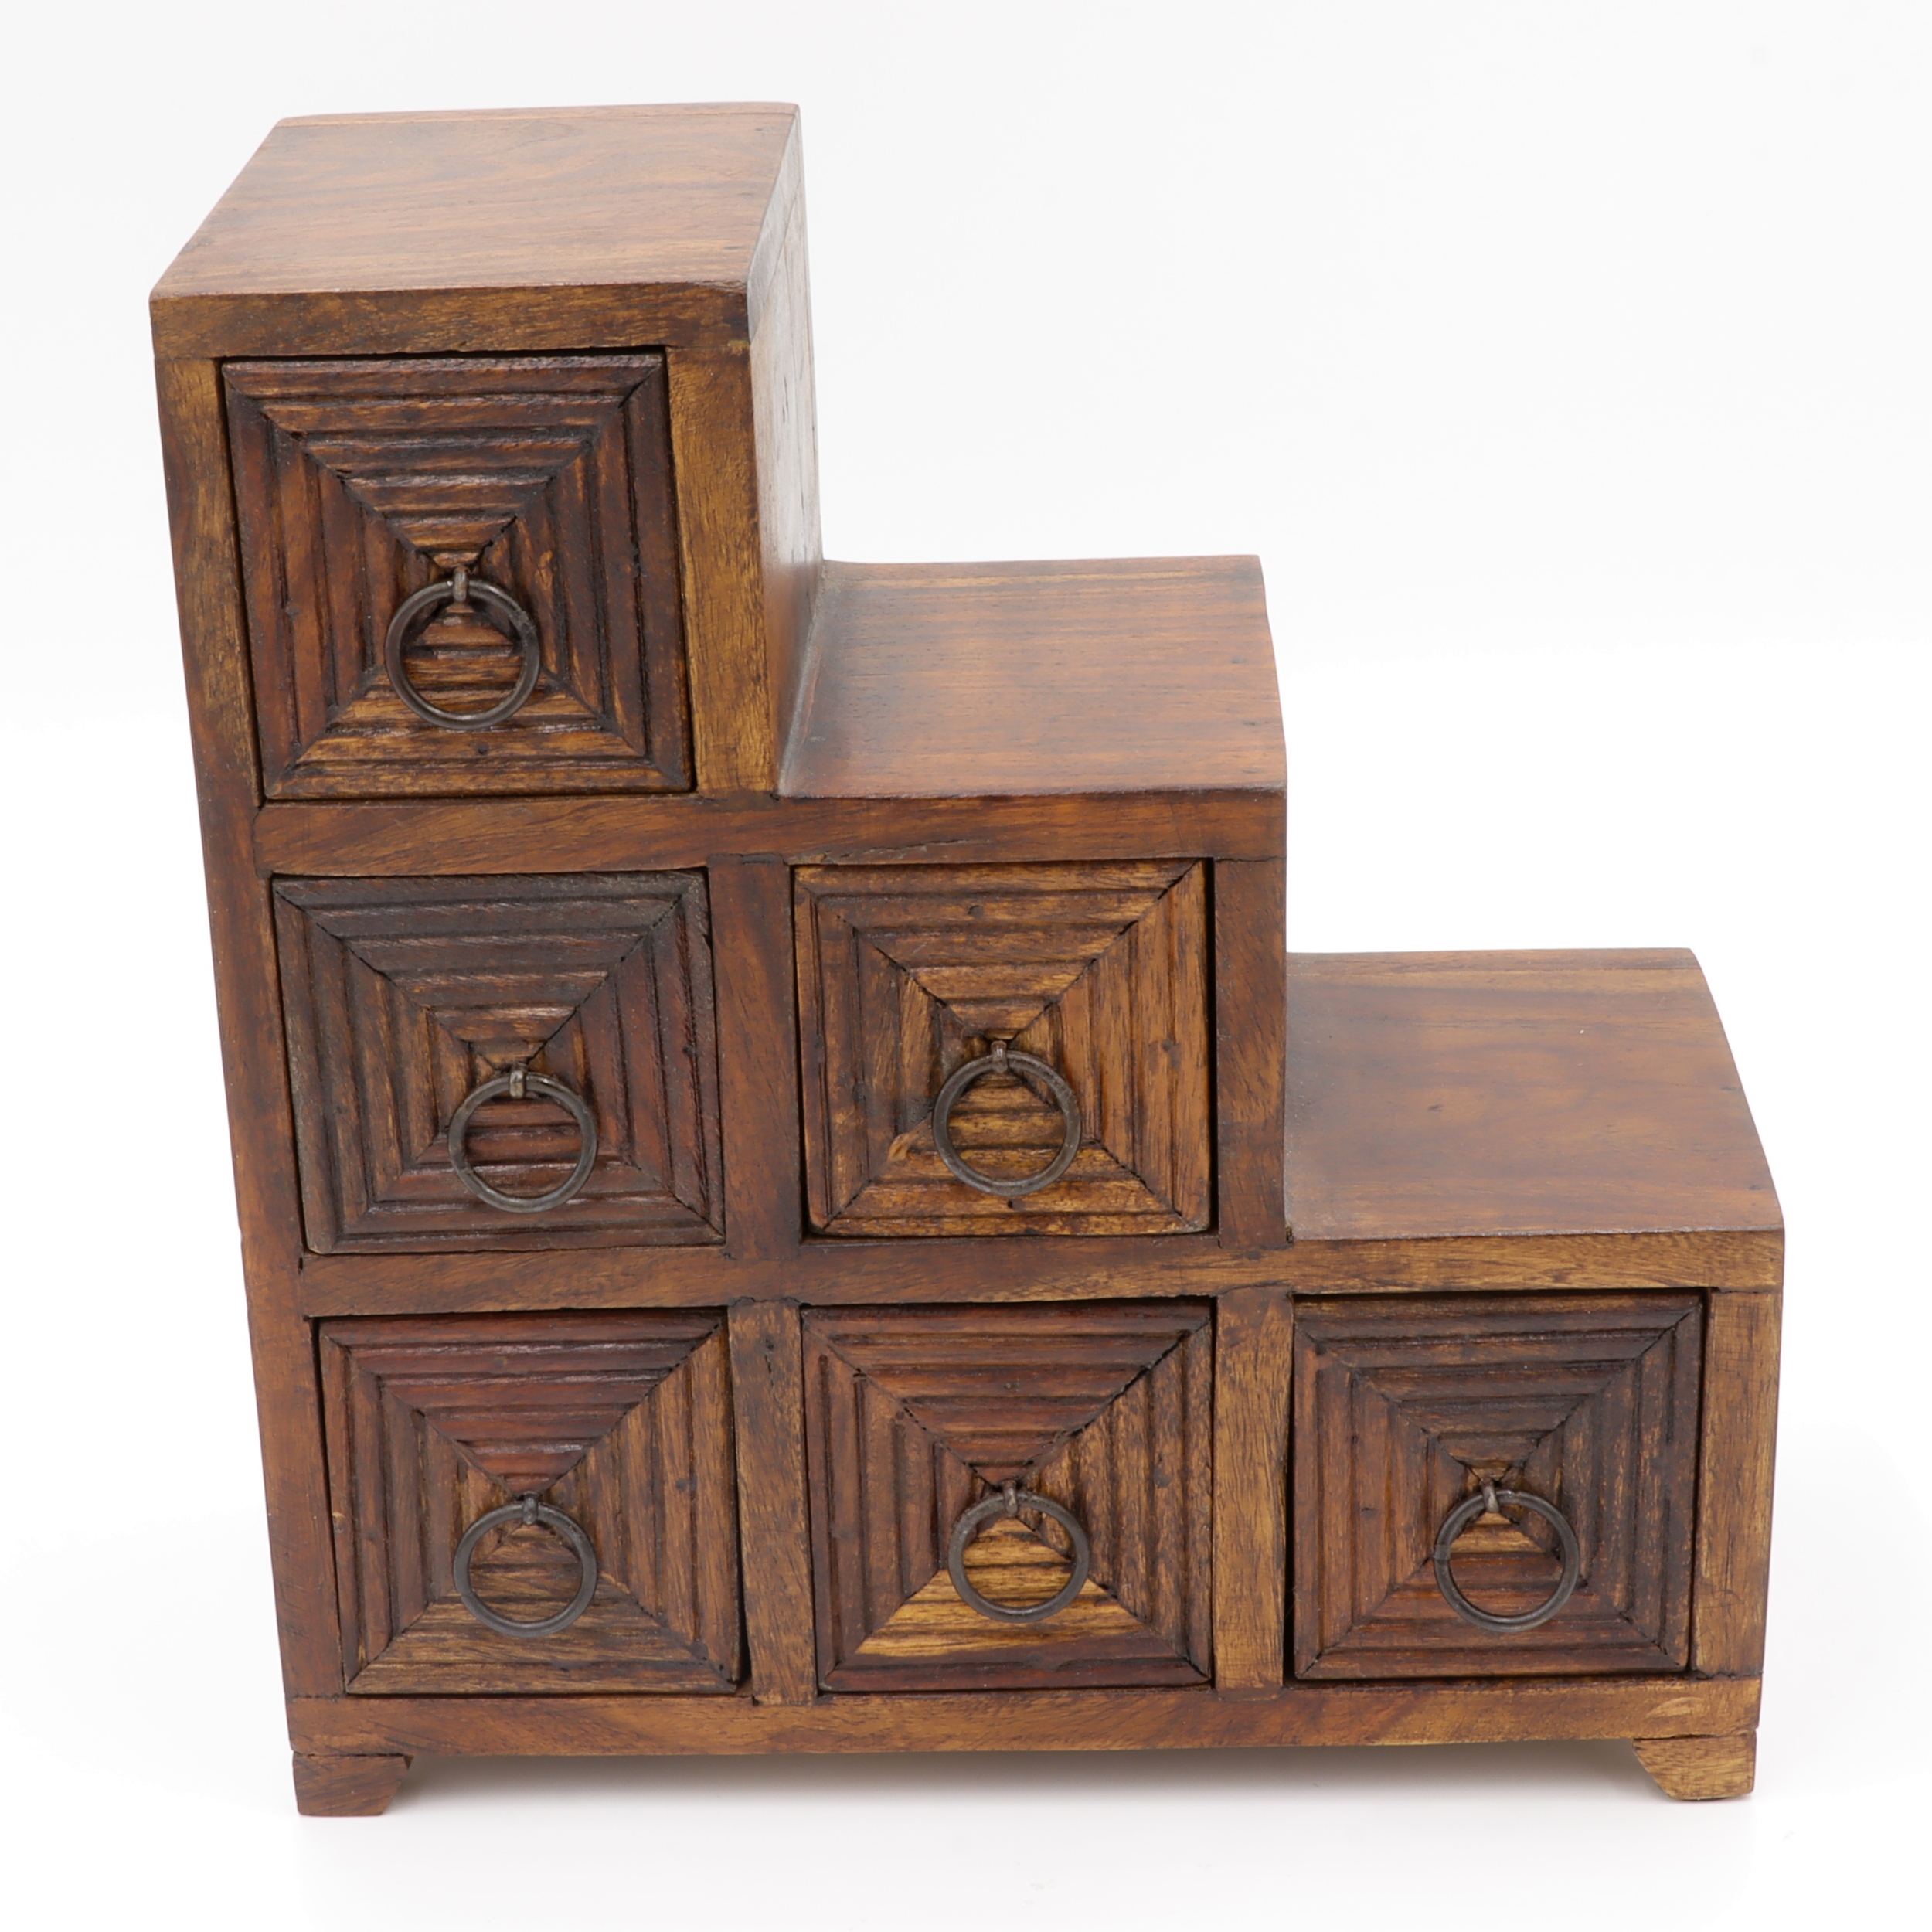 Schubladenschrank aus Holz - Sechs Schubladen verziert mit quadratischen Linien - Treppenstufen Design - praktisch und dekorativ